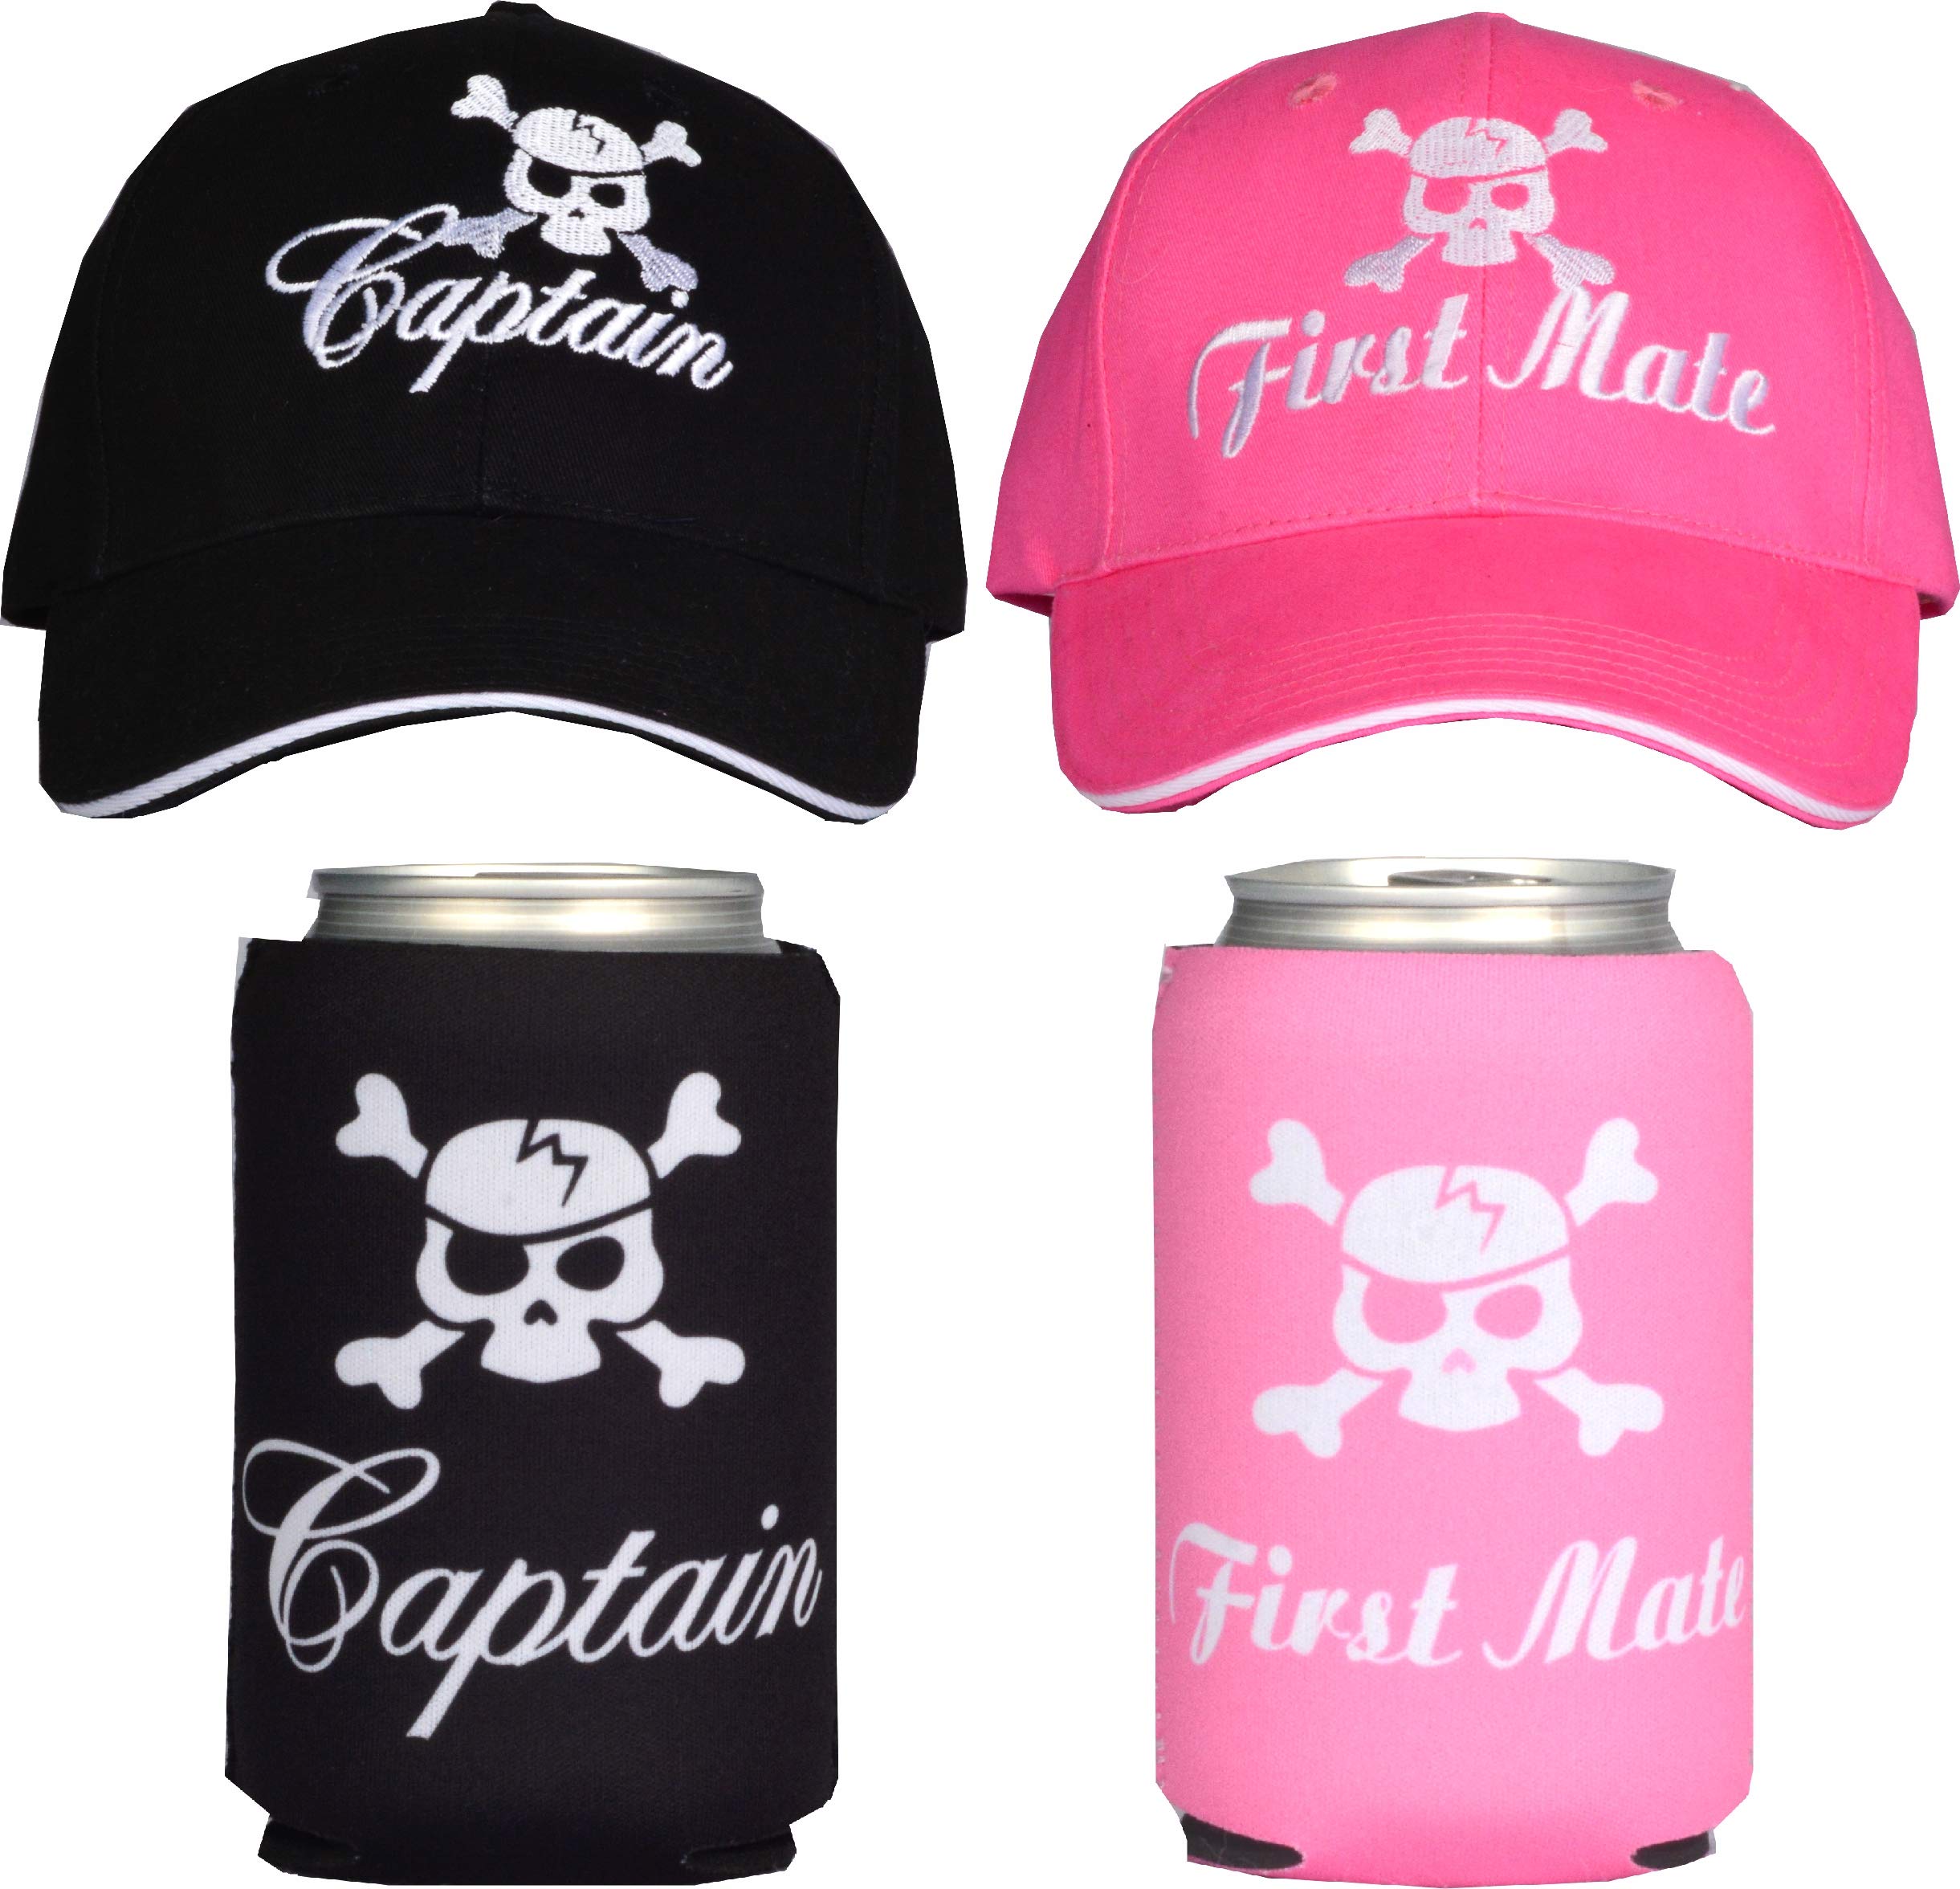 Captain Hats 